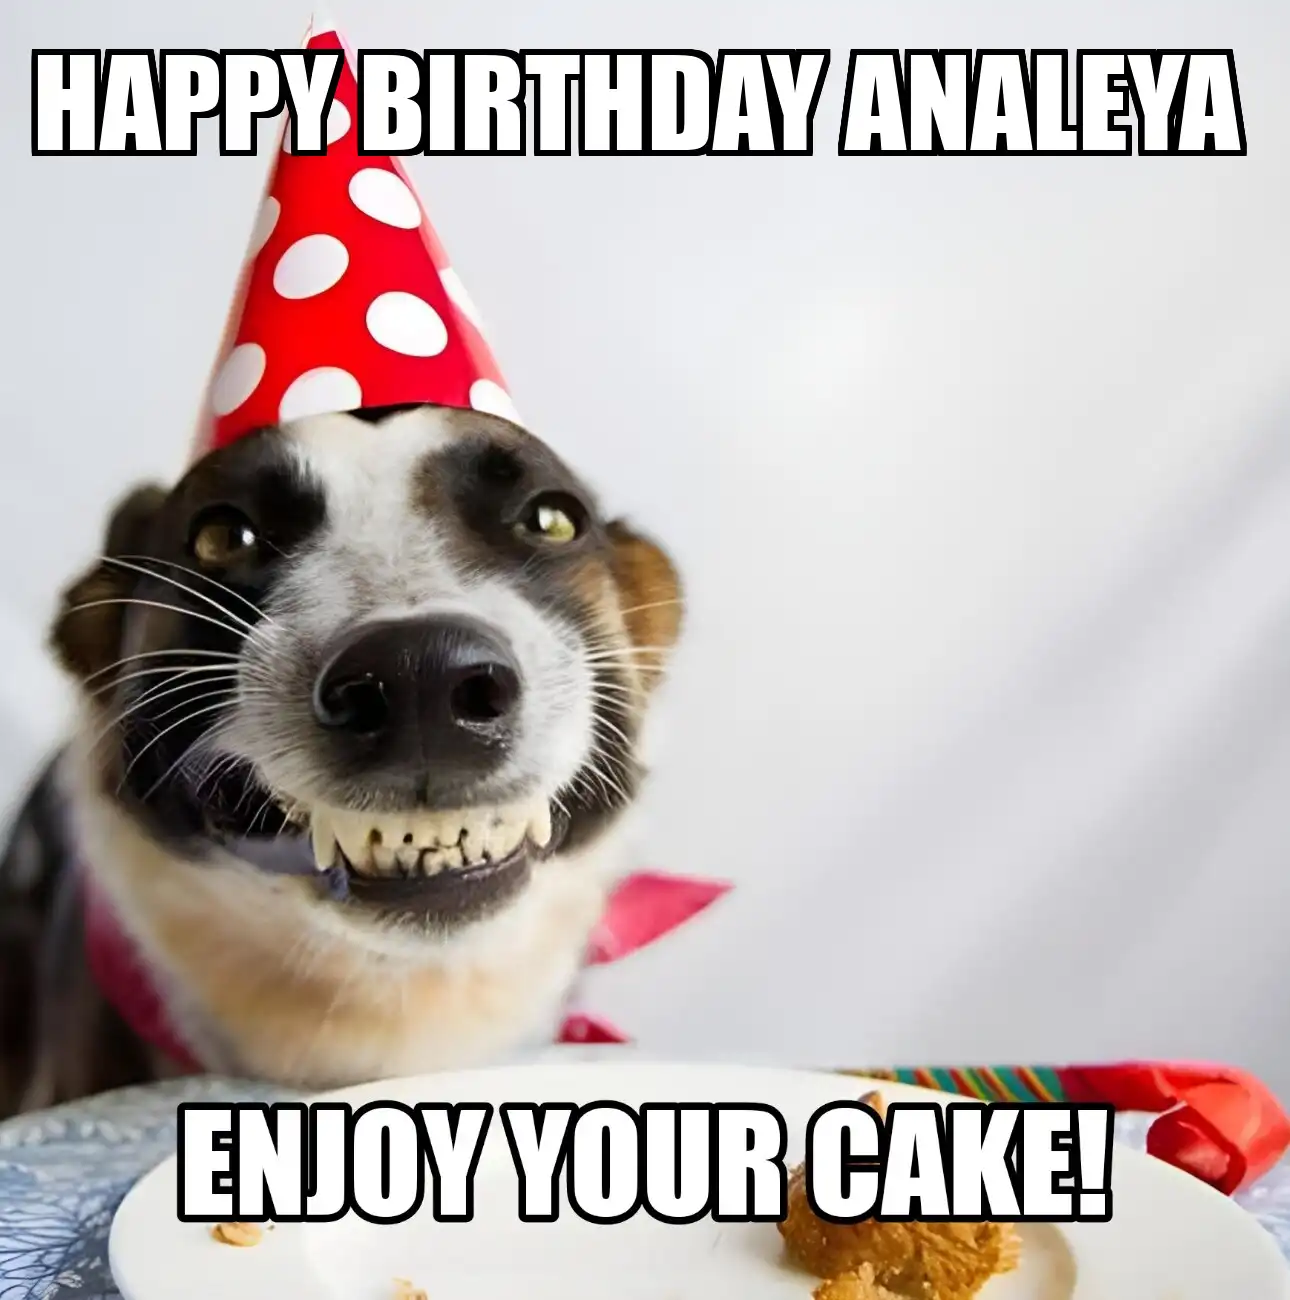 Happy Birthday Analeya Enjoy Your Cake Dog Meme